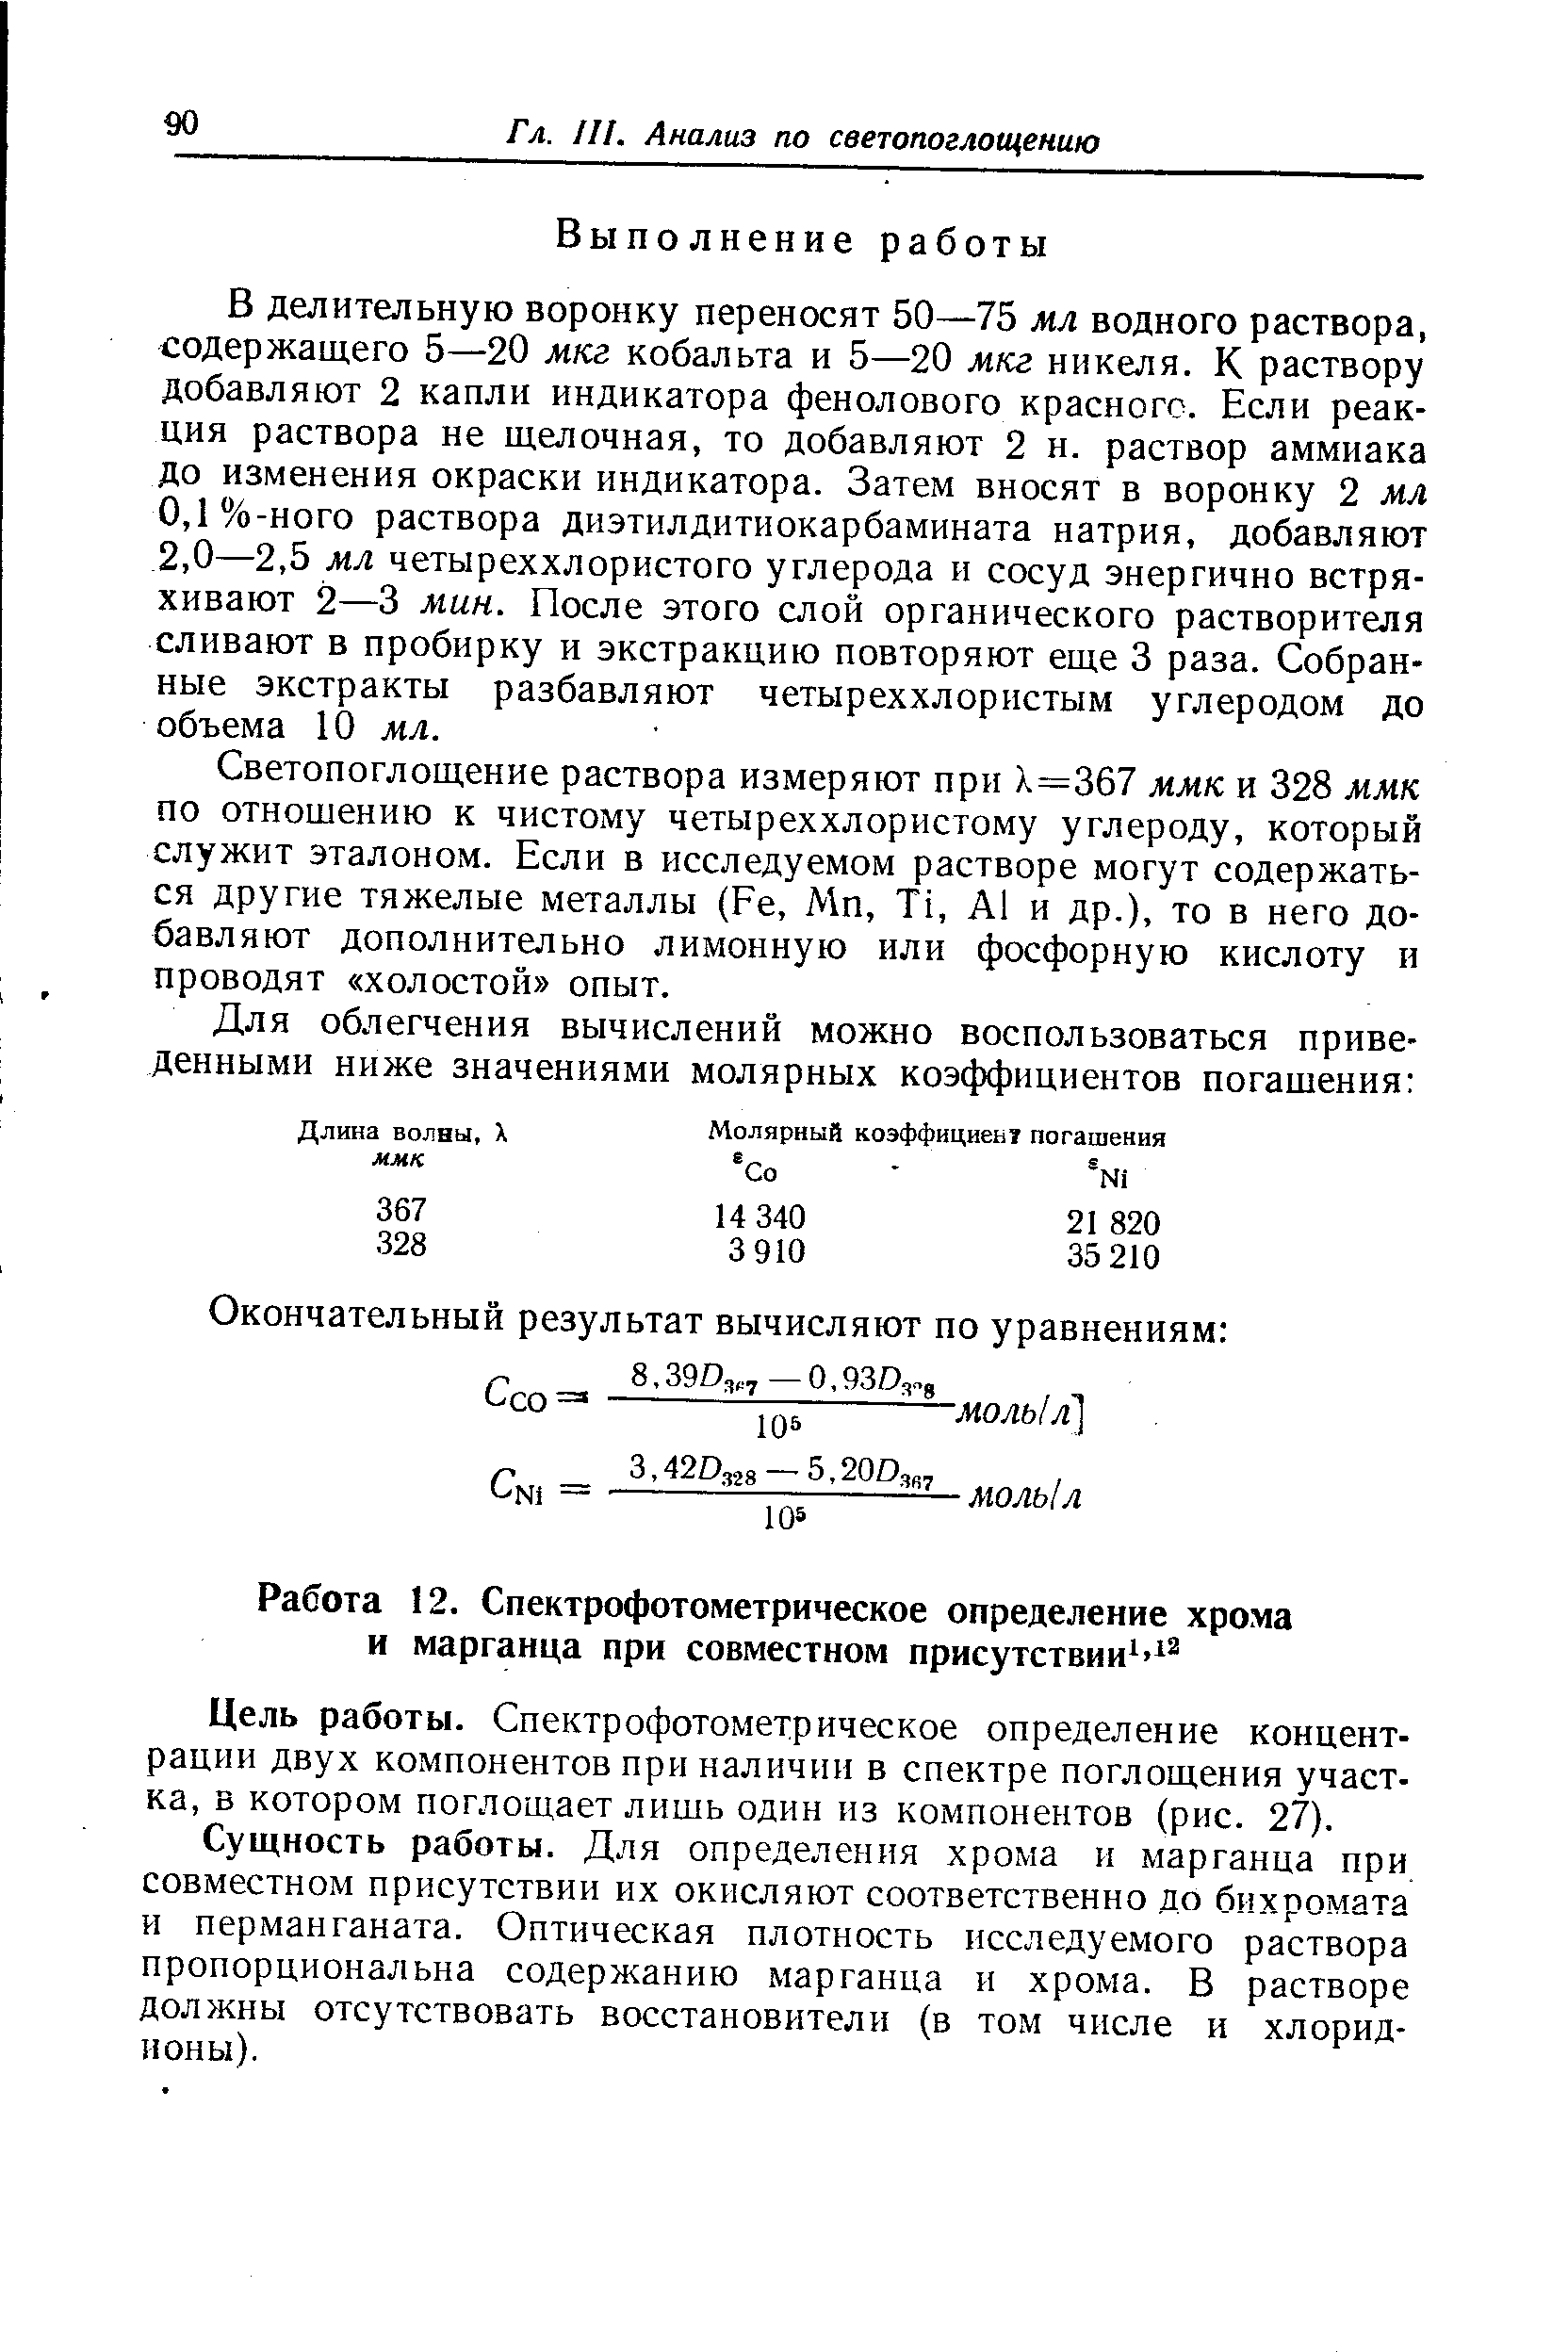 Цель работы. Спектрофотометрическое определение концентрации двух компонентов при наличии в спектре поглощения участка, в котором поглощает лишь один из компонентов (рис. 27).